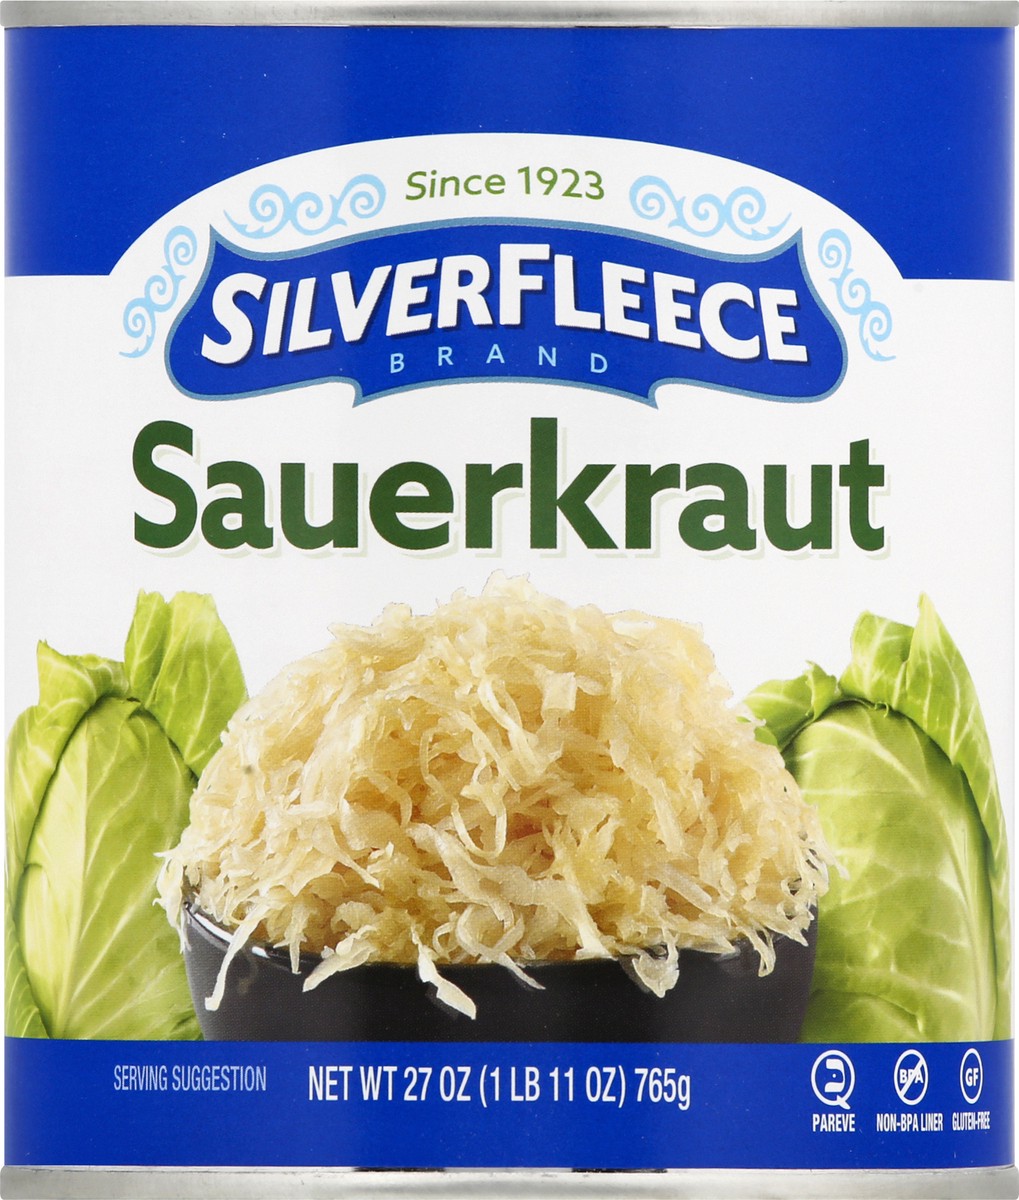 slide 6 of 9, SilverFleece Silver Fleece Sauerkraut, 27 oz